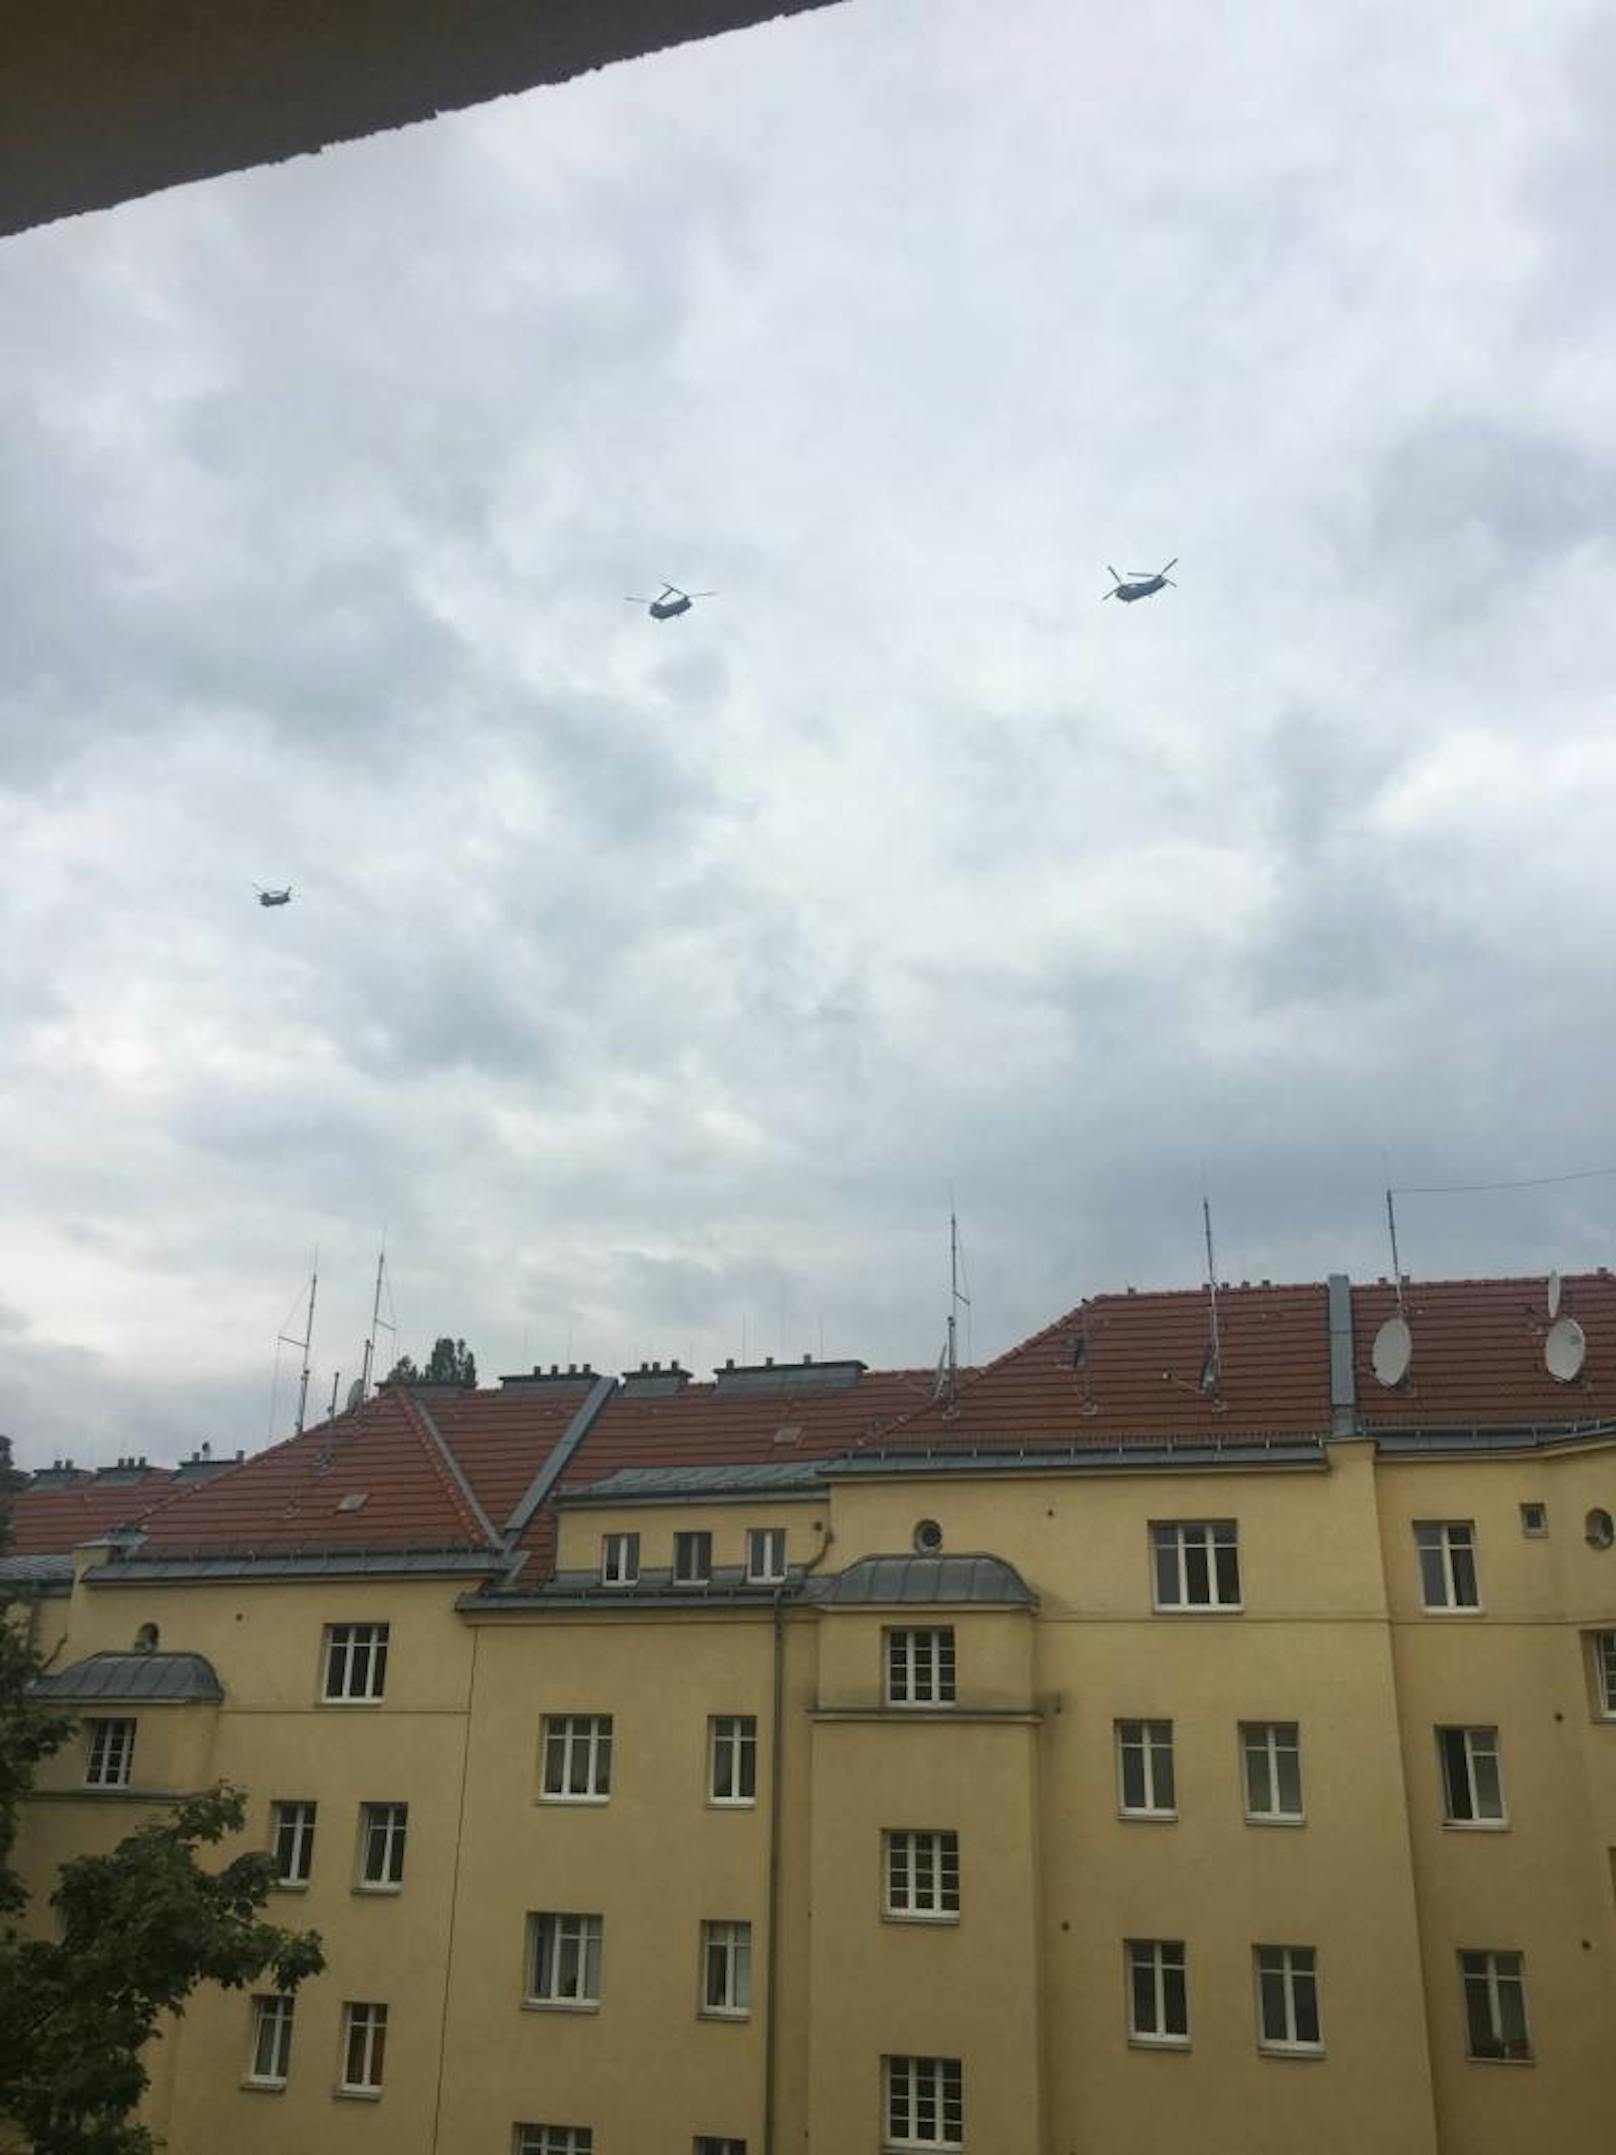 "27.7. 3 Bundeswehr Flugzeuge ... Was ist los in Wien?"